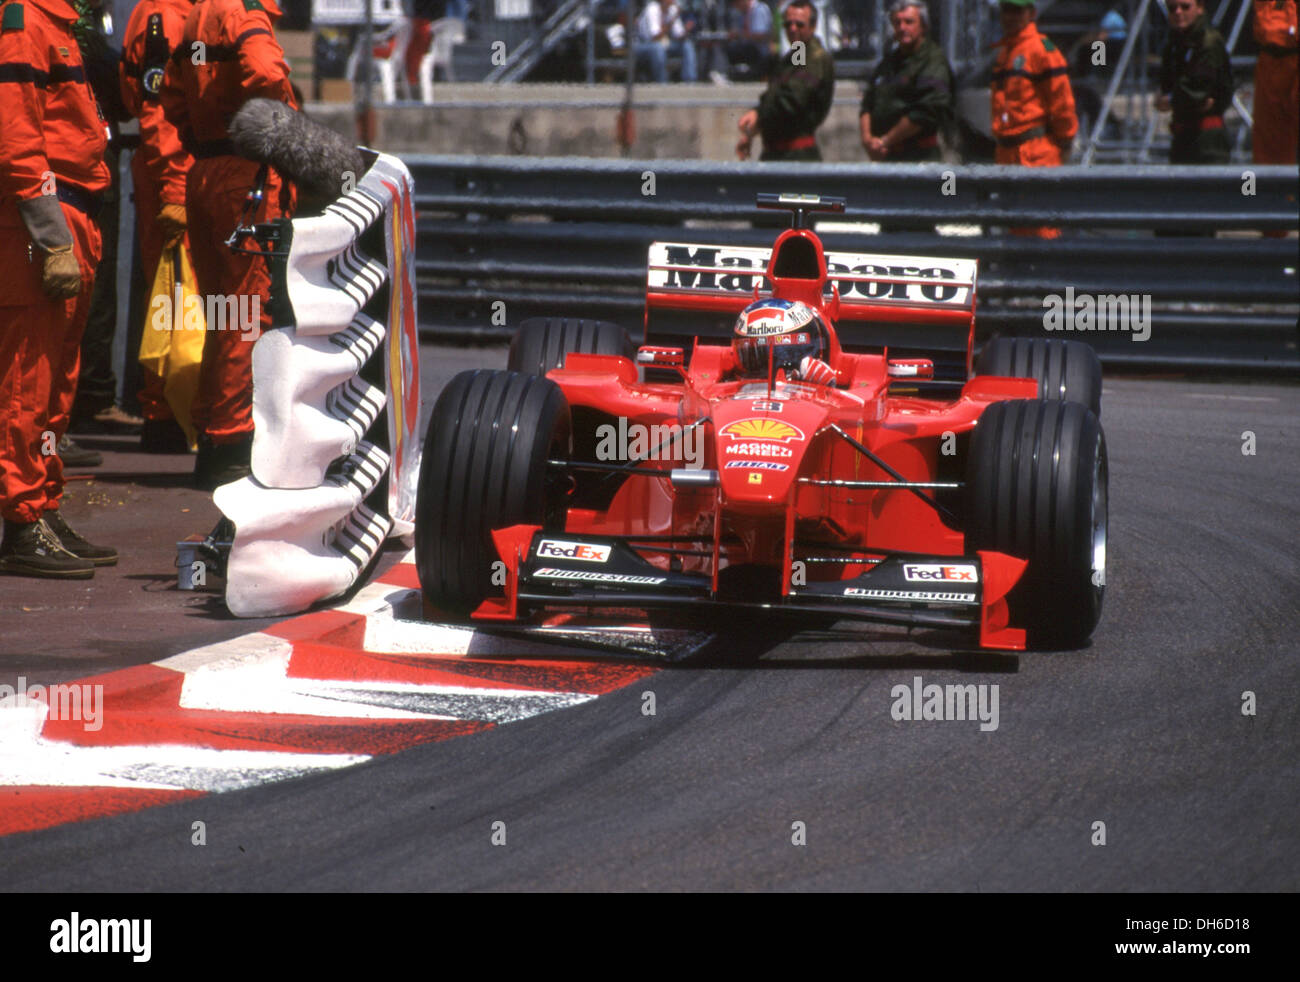 Michael Schumacher in a Ferrari F399 at the Monaco Grand Prix 1999. Stock Photo